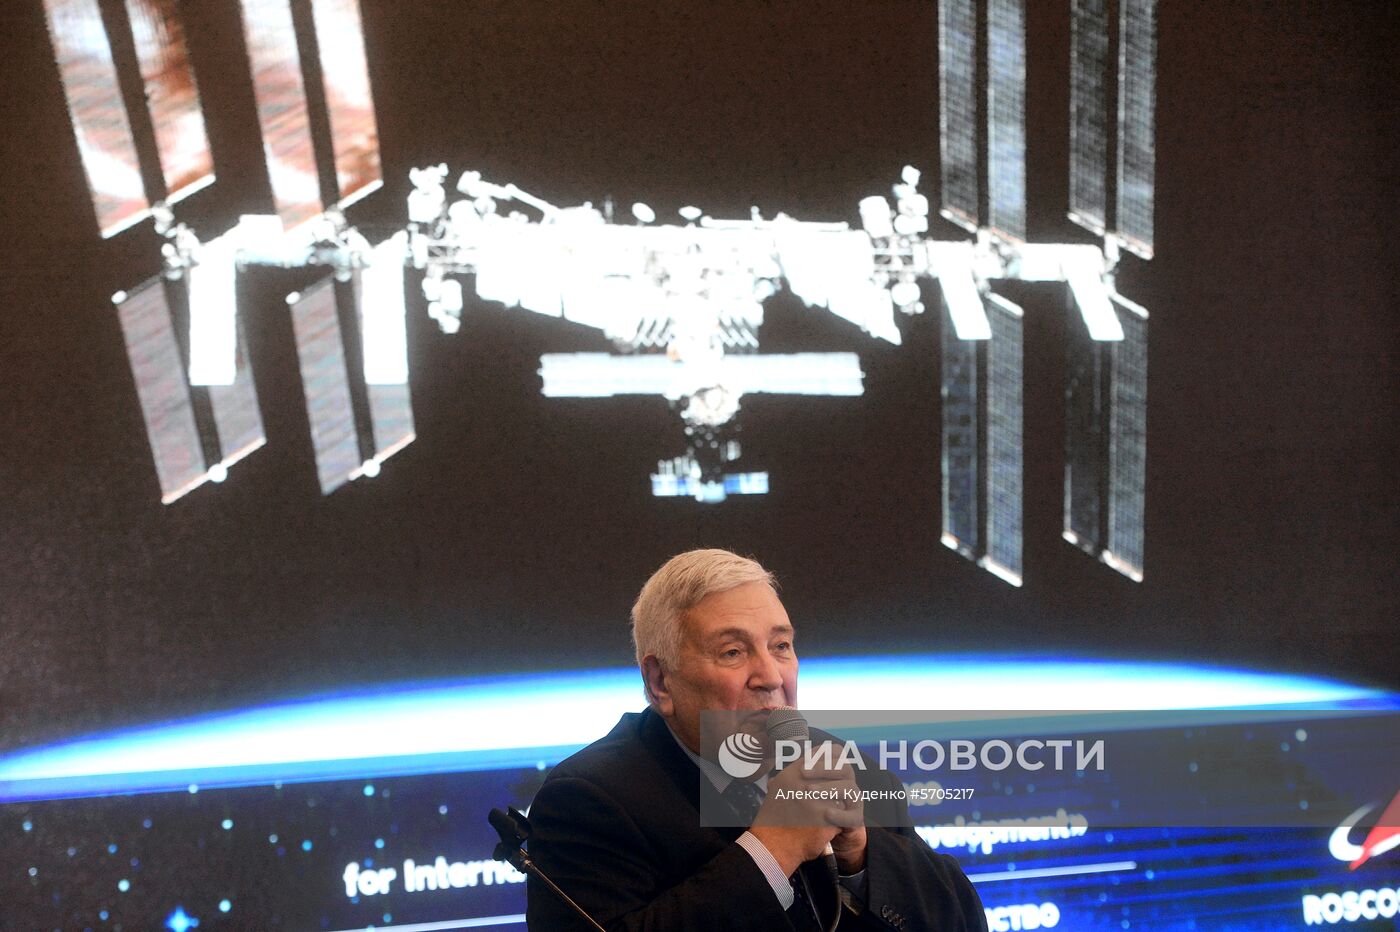 Международная конференция "Космонавтика: открытое пространство международного сотрудничества и развития"